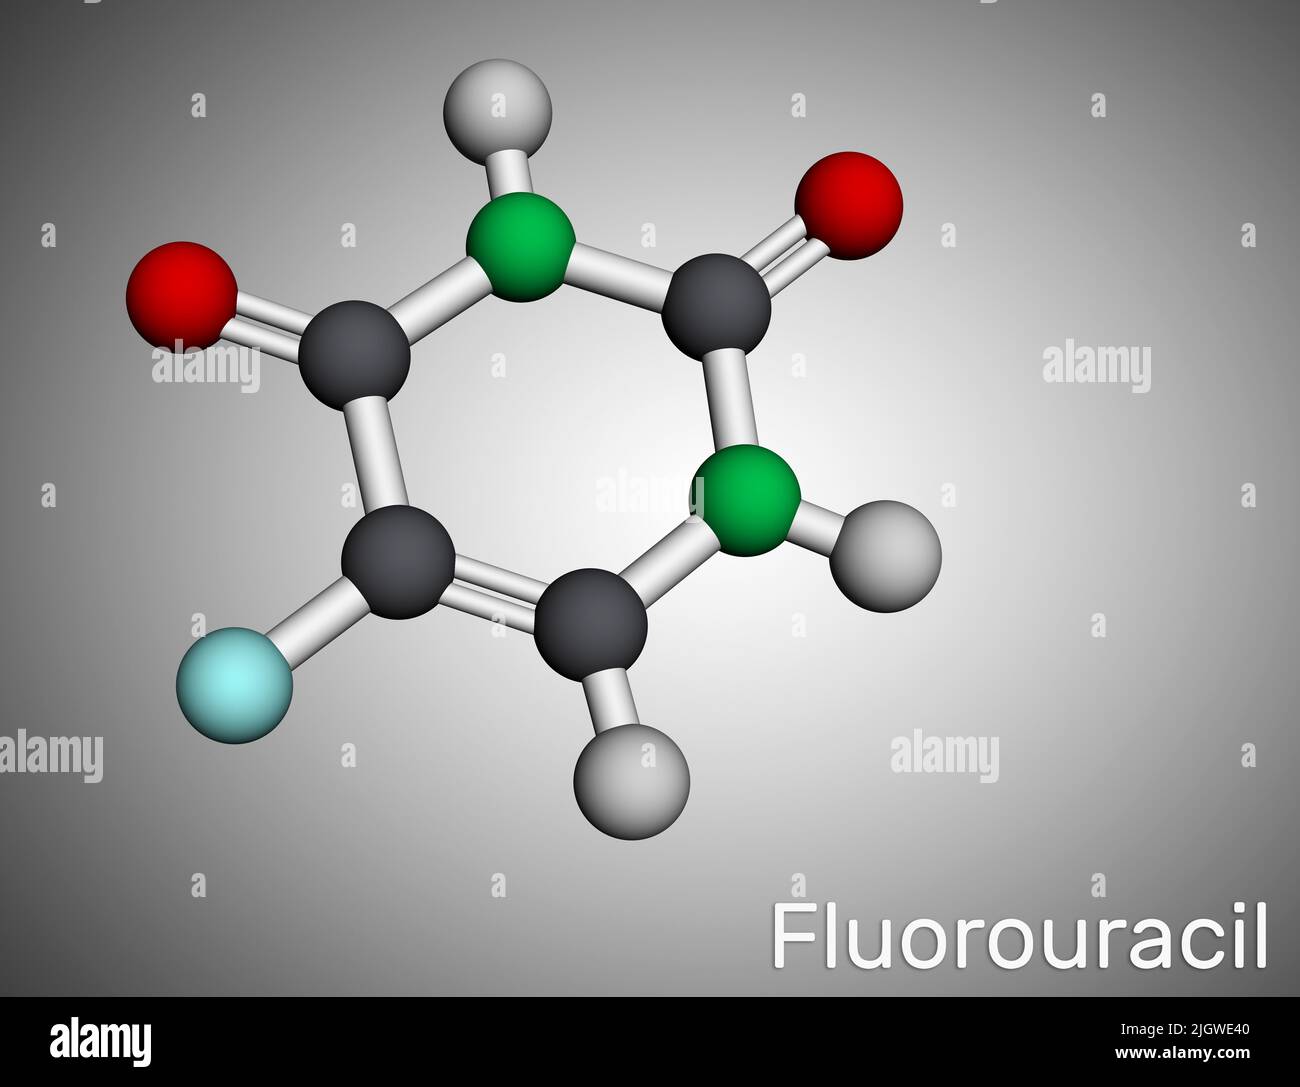 Fluorouracil, 5-FU-Molekül. Es handelt sich um ein Pyrimidin-analoges, zytotoxisches Chemotherapeutikum, das zur Behandlung von Krebs eingesetzt wird. Molekularmodell. 3D Rendern. Illustrat Stockfoto